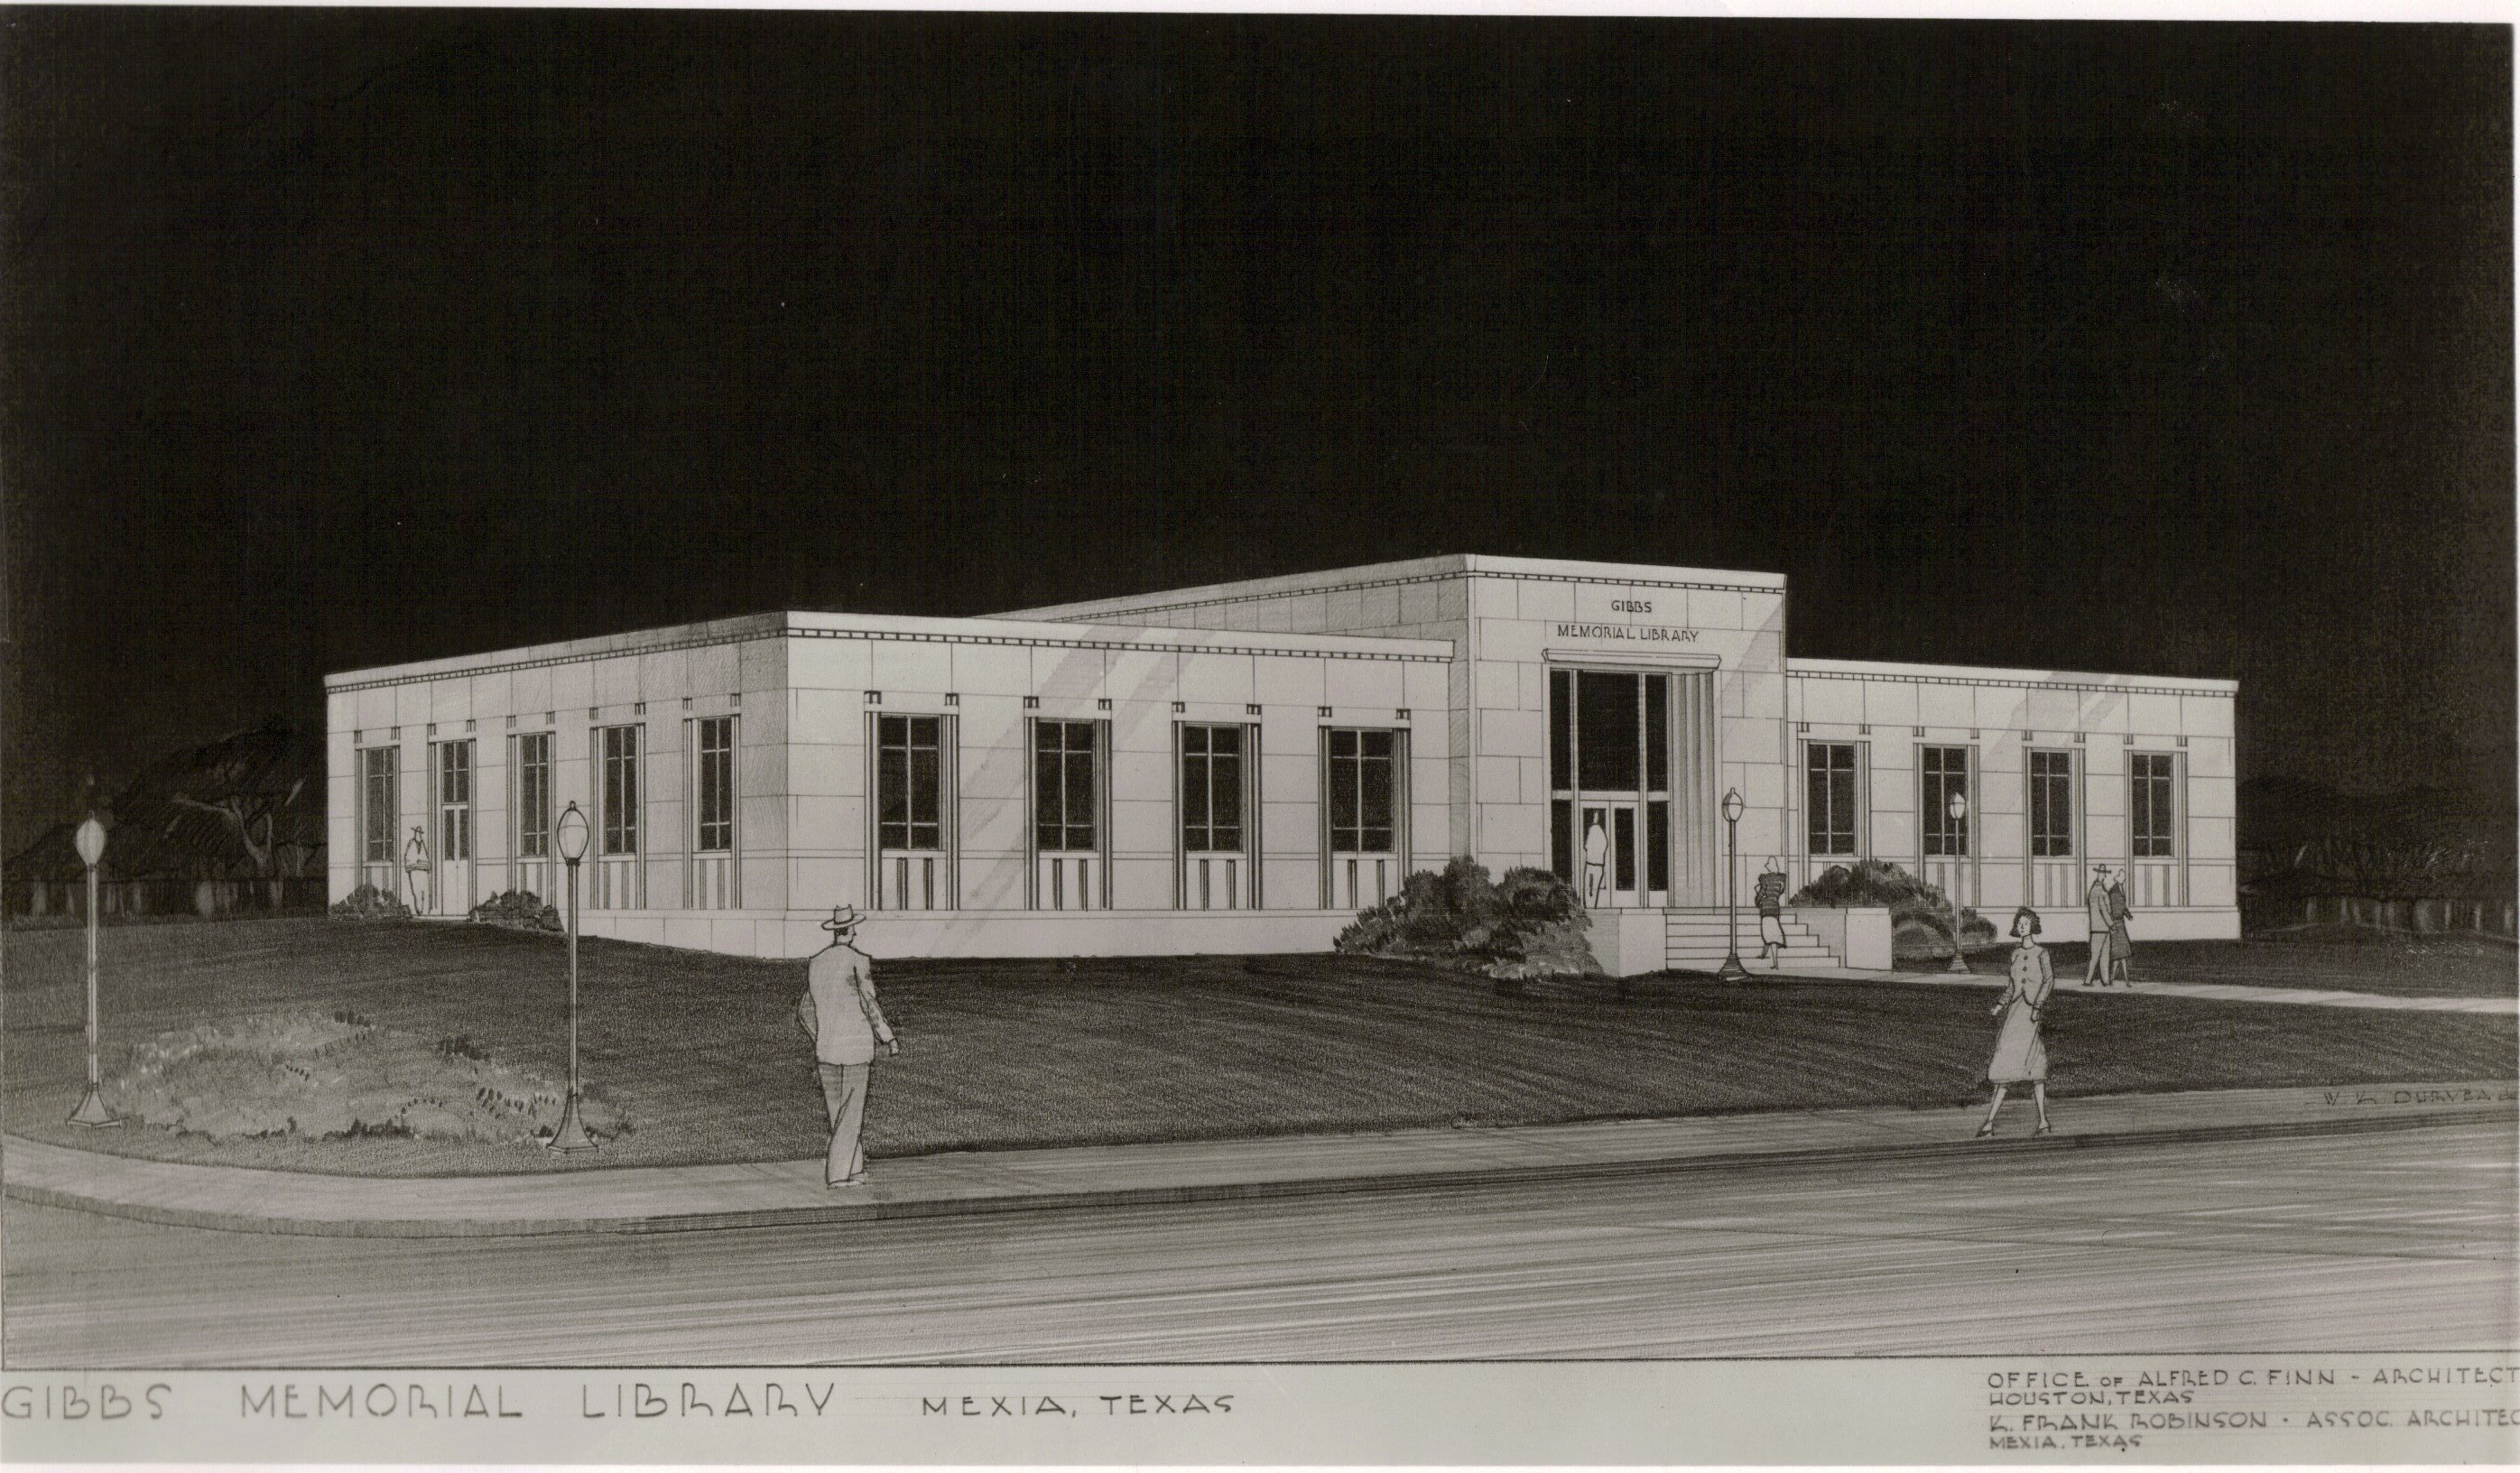 Gibbs Memorial Library